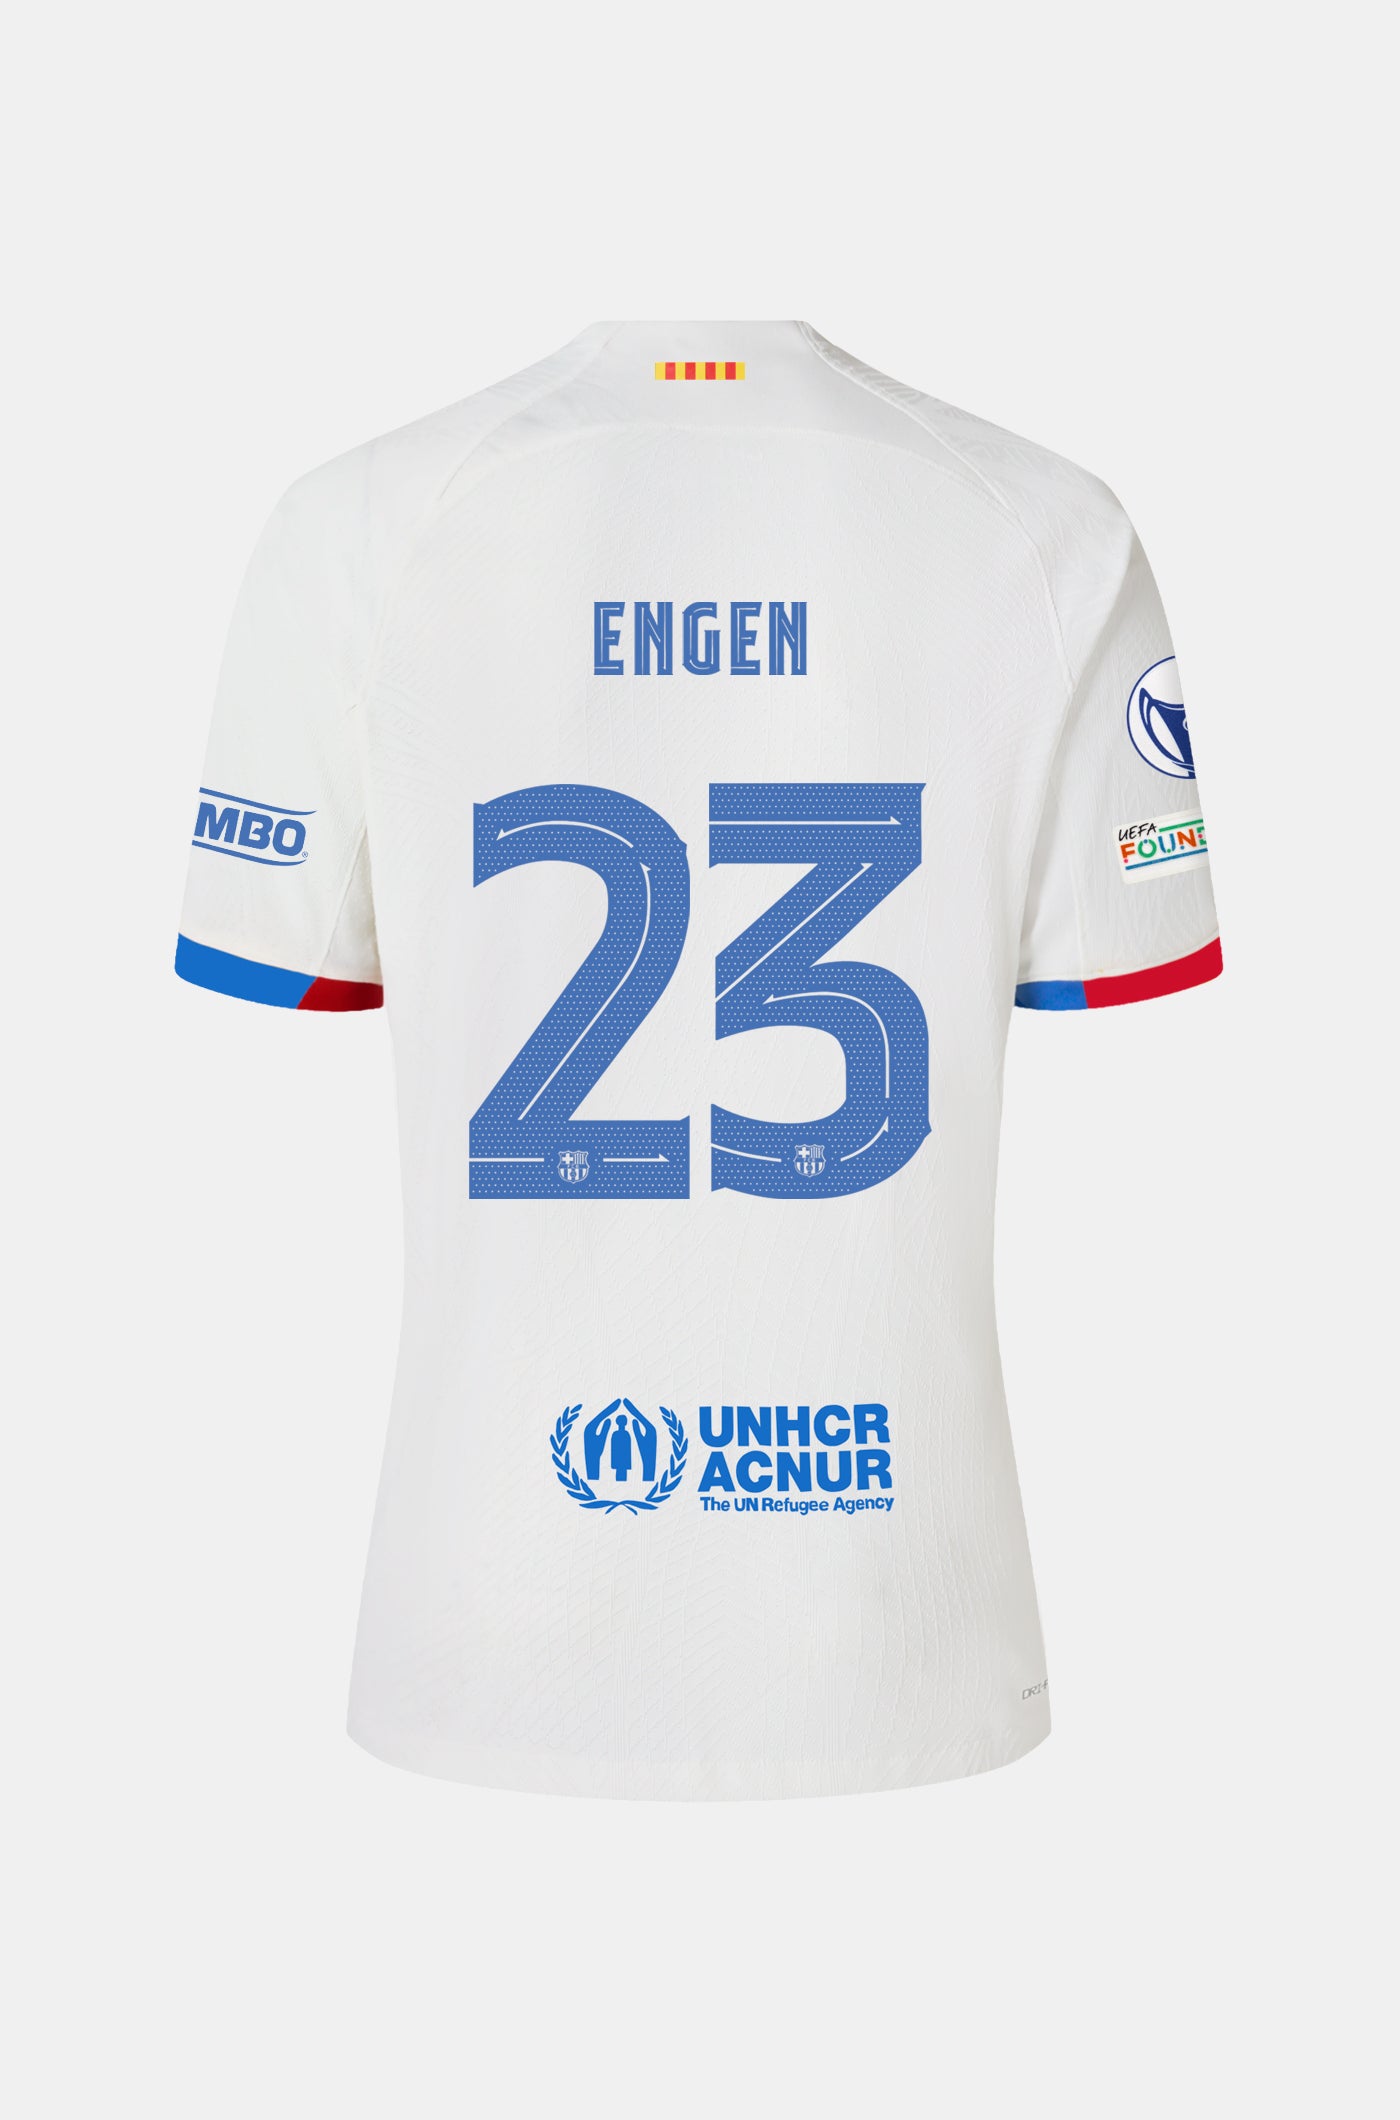 UWCL FC Barcelona away shirt 23/24 Player's Edition - ENGEN